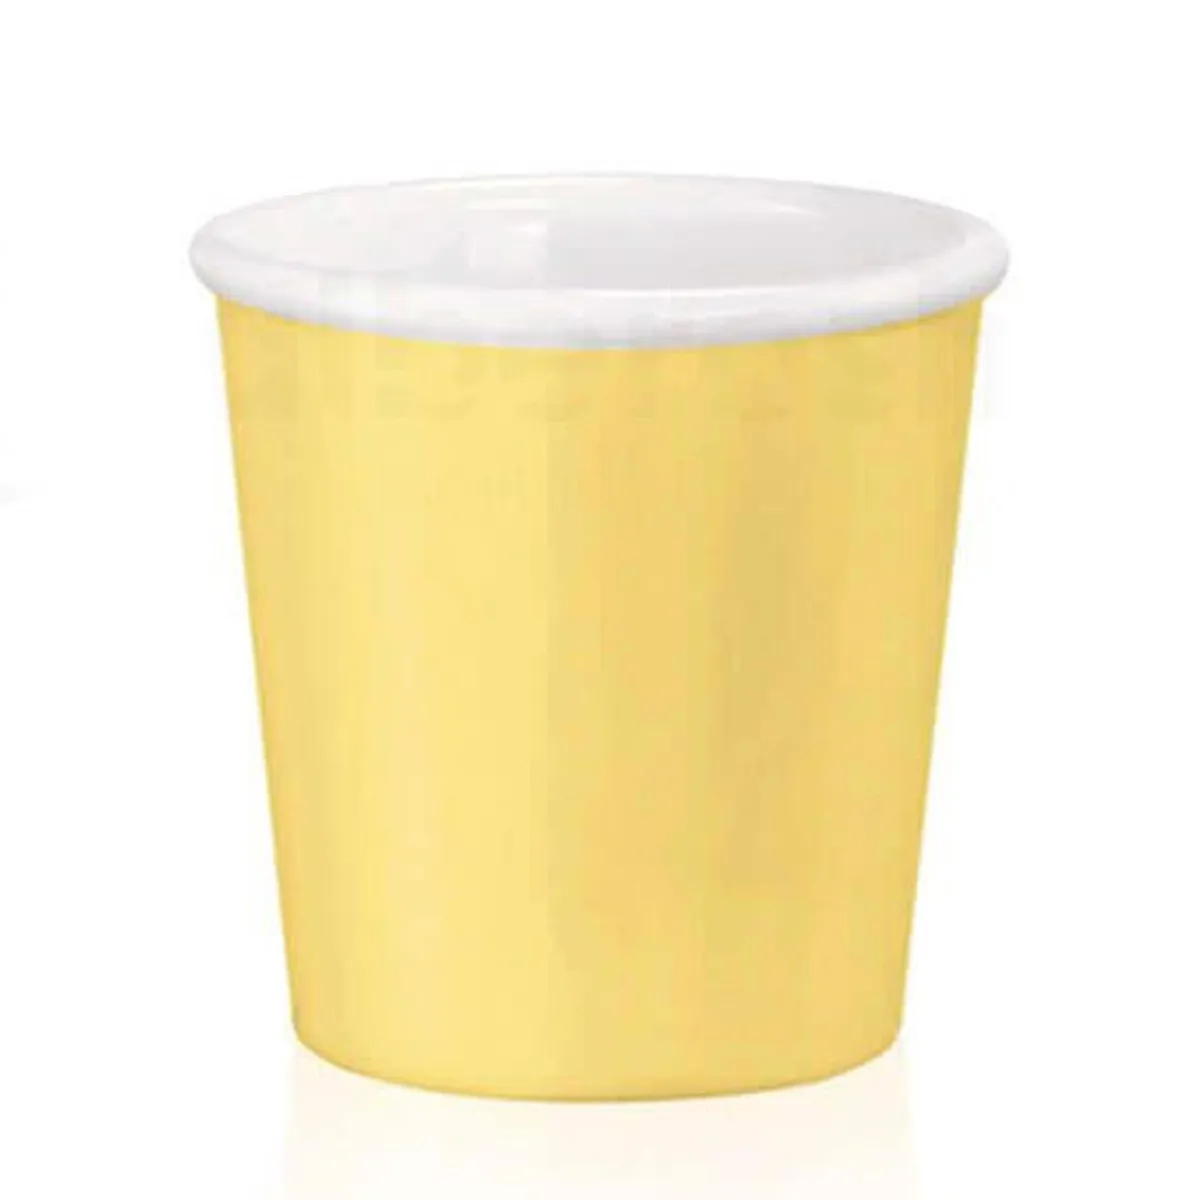 כוס אספרסו 9.5 ס"ל צהוב